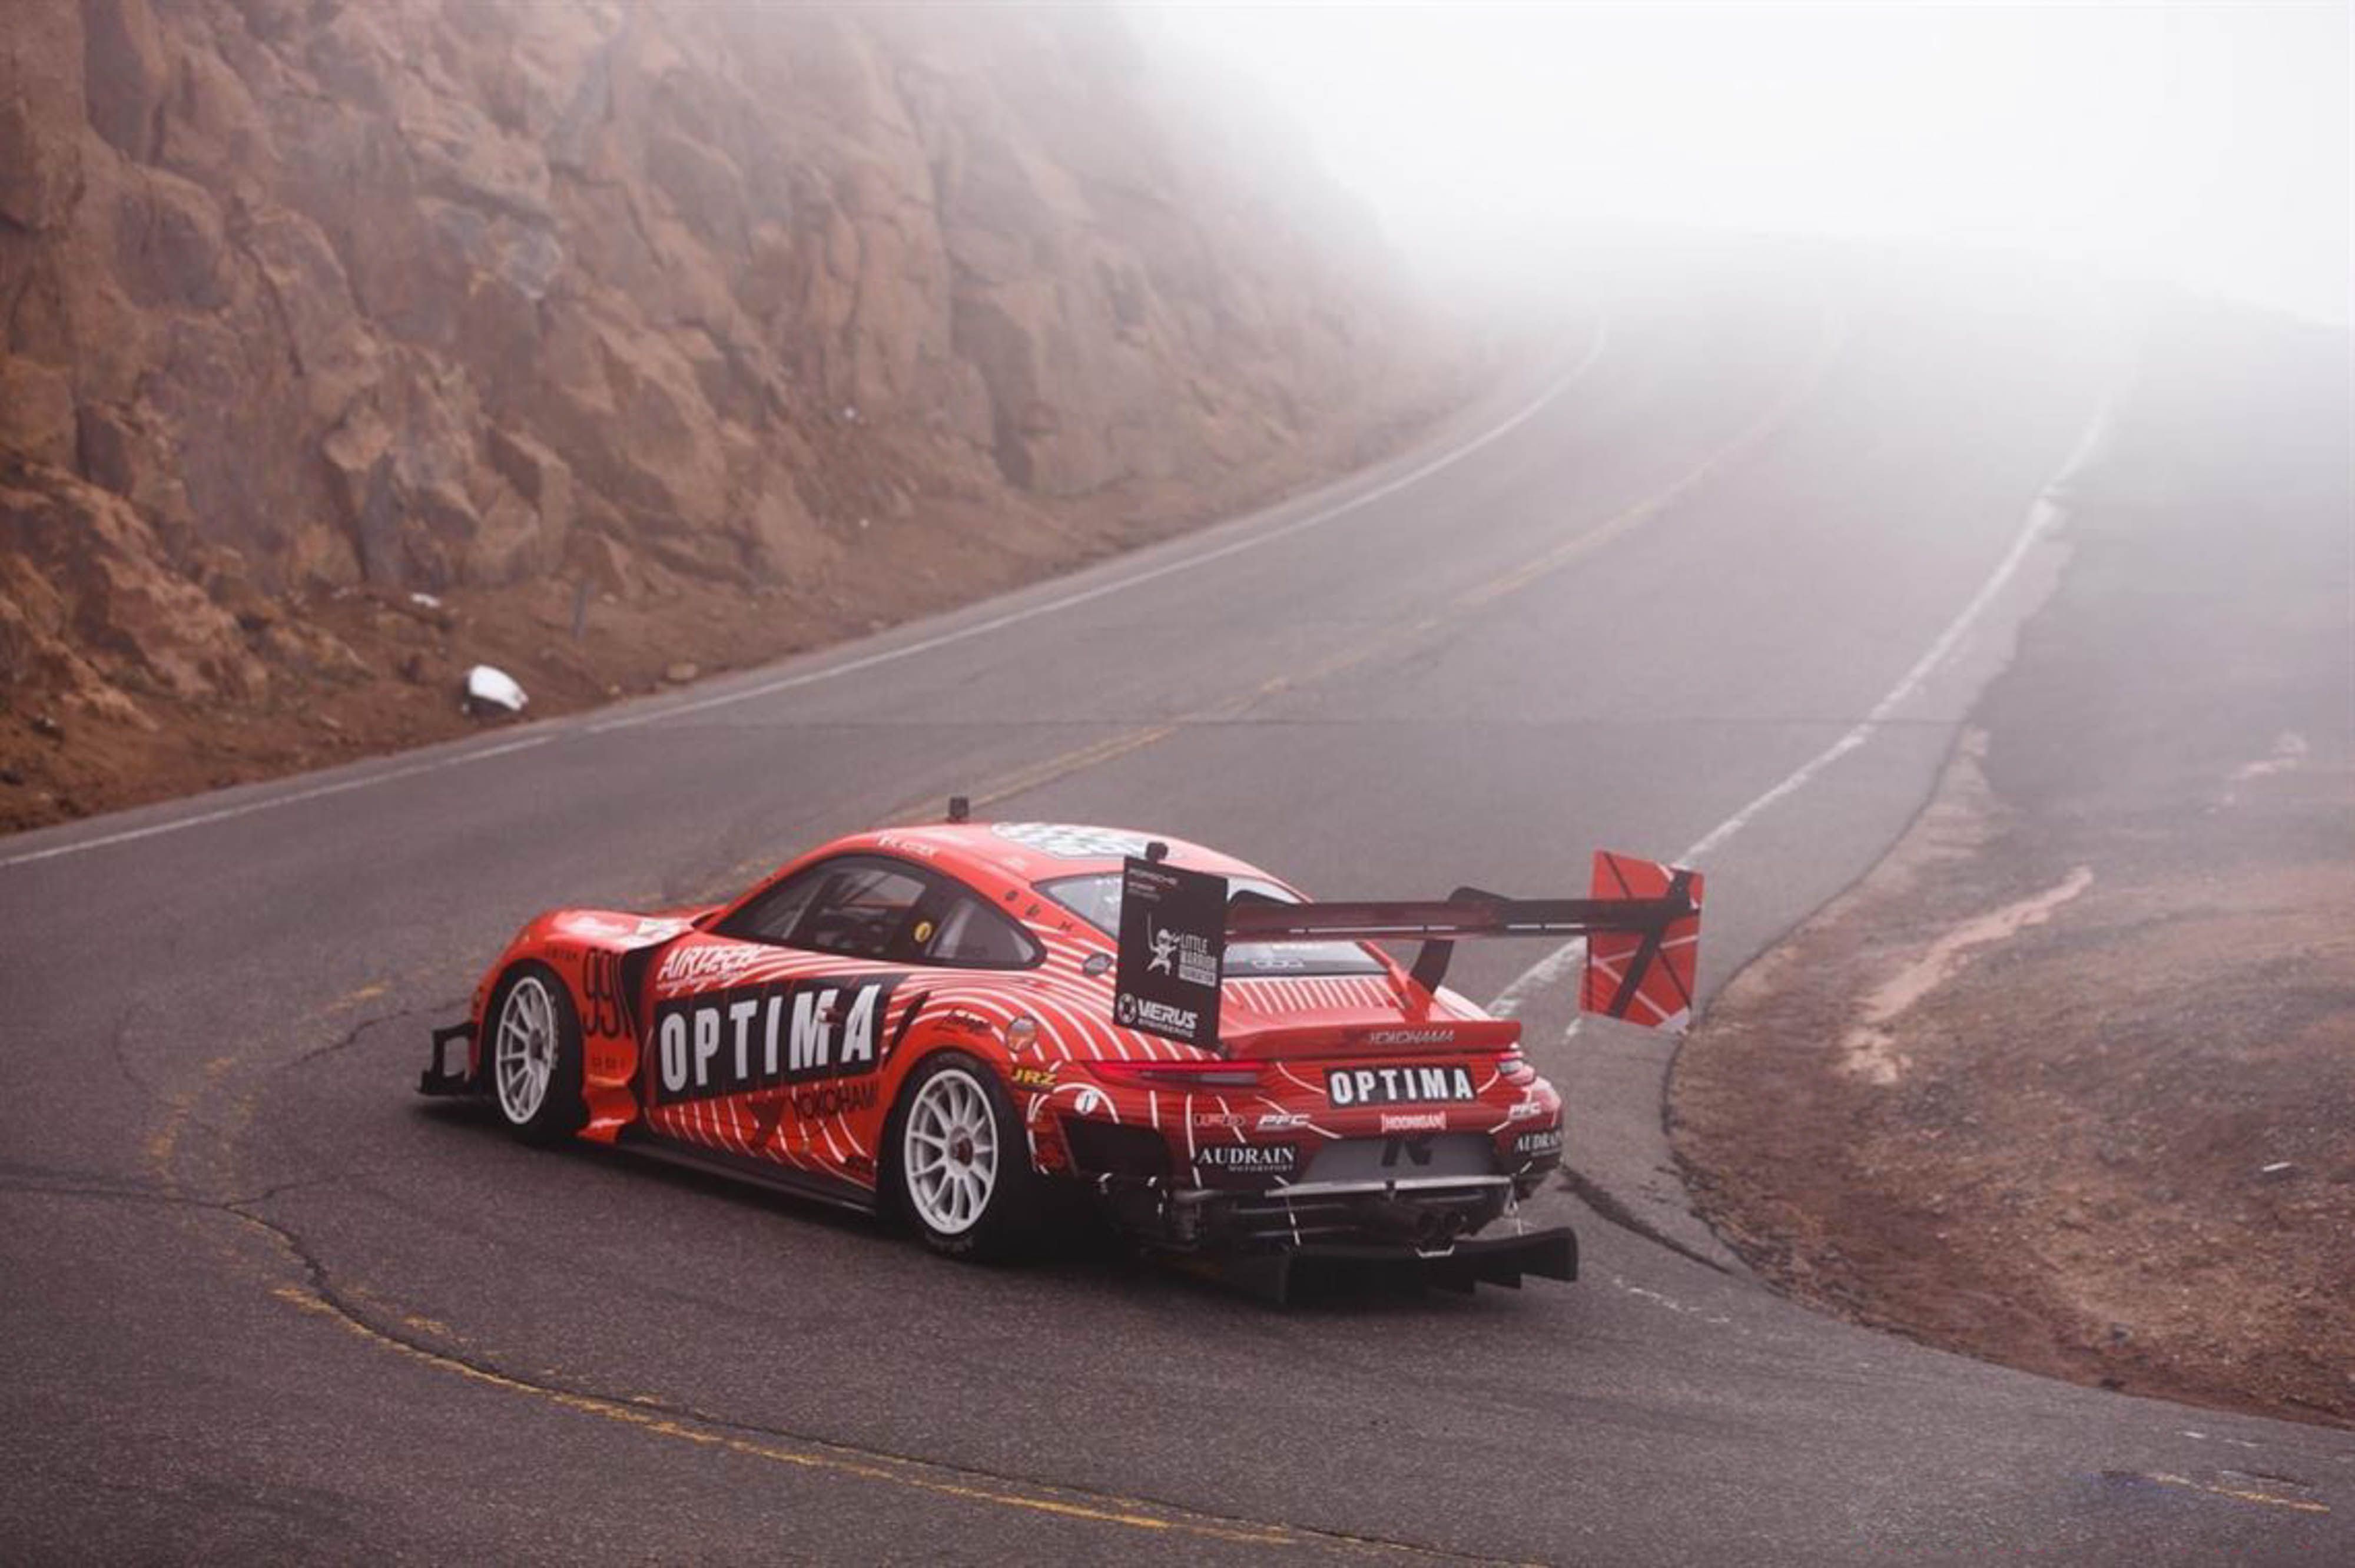 保时捷 GT3 CUP，已经改造为爬山赛车，派克峰爬山赛记录保持者